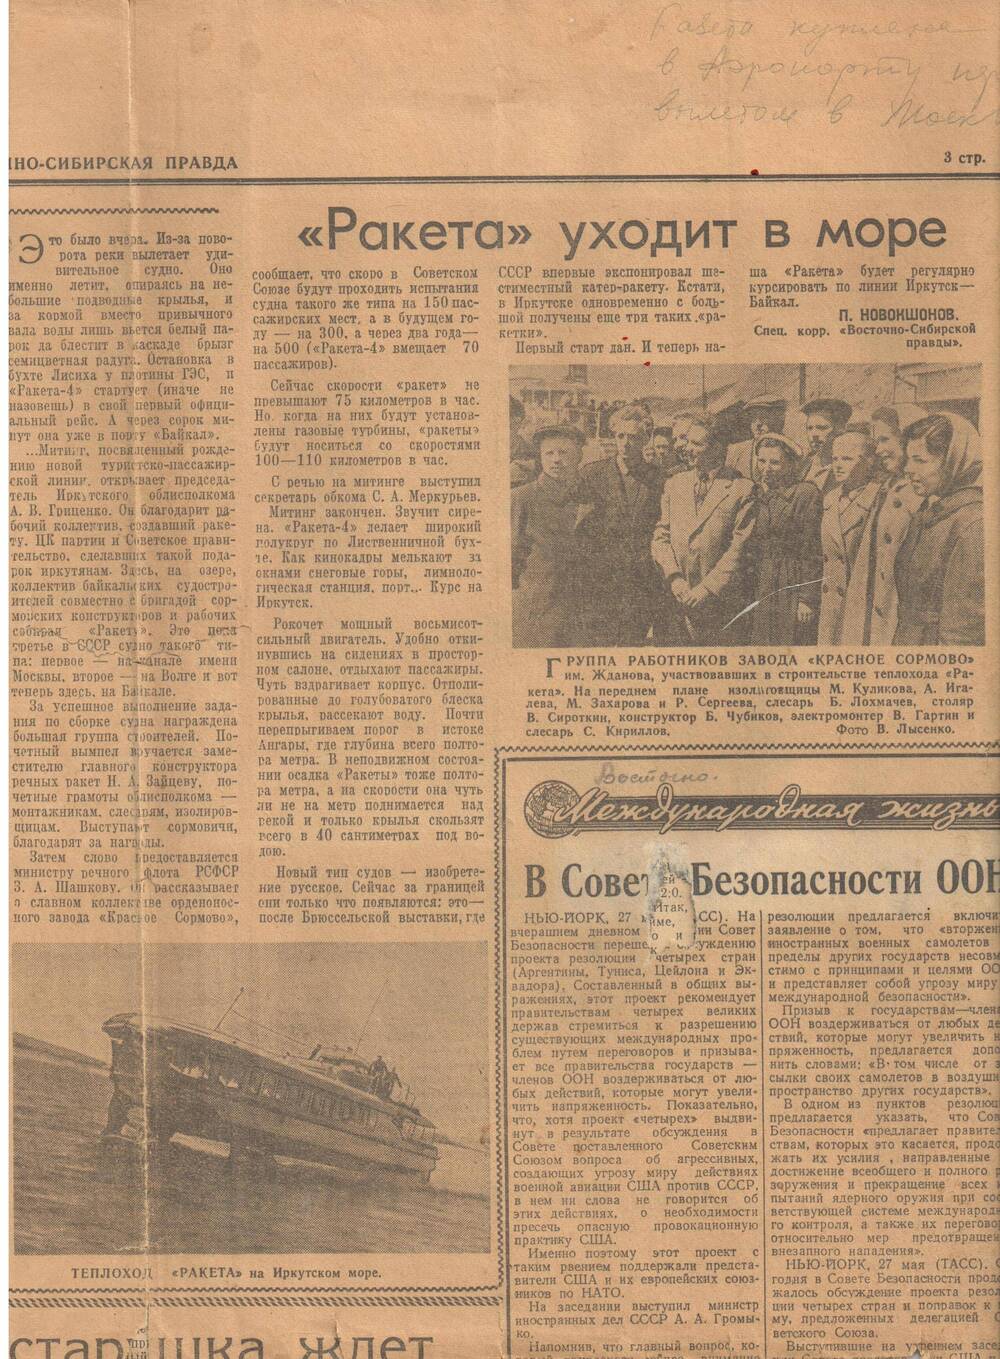 Вырезка из газеты Восточно -Сибирская правда с материалом о Чубикове Б.В. 1960 г